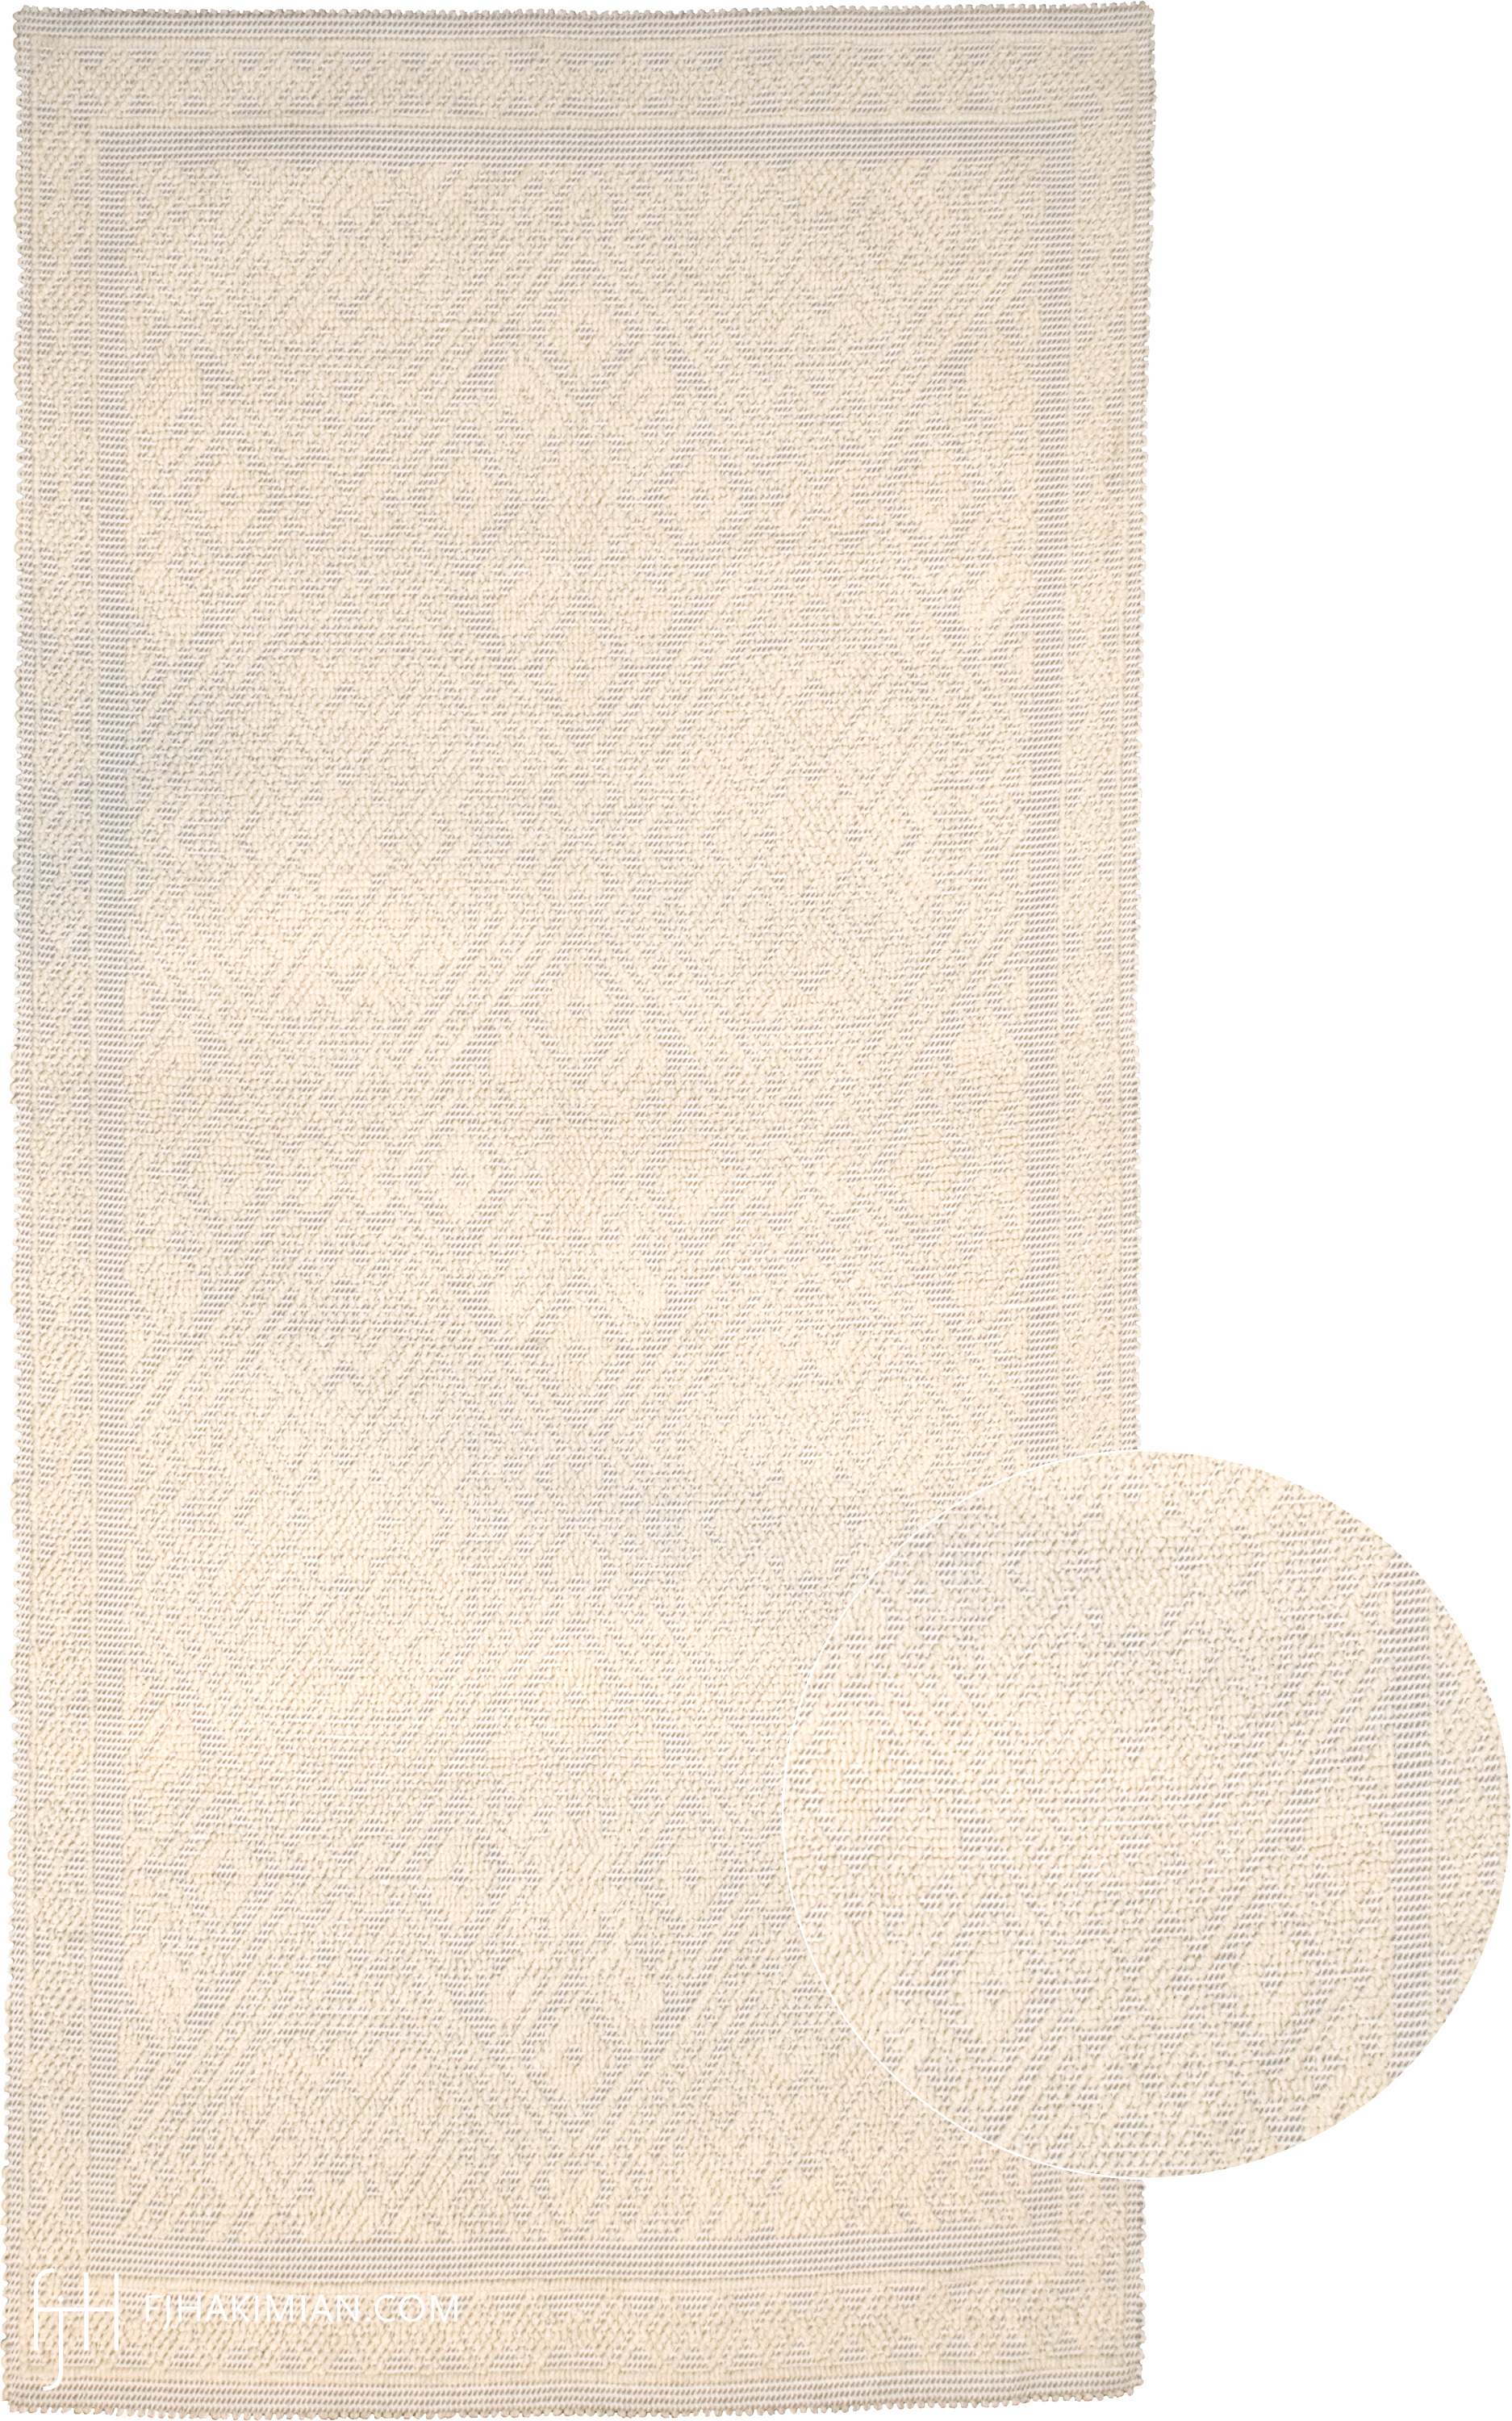 25072 Sardinian Tapestry | FJ Hakimian